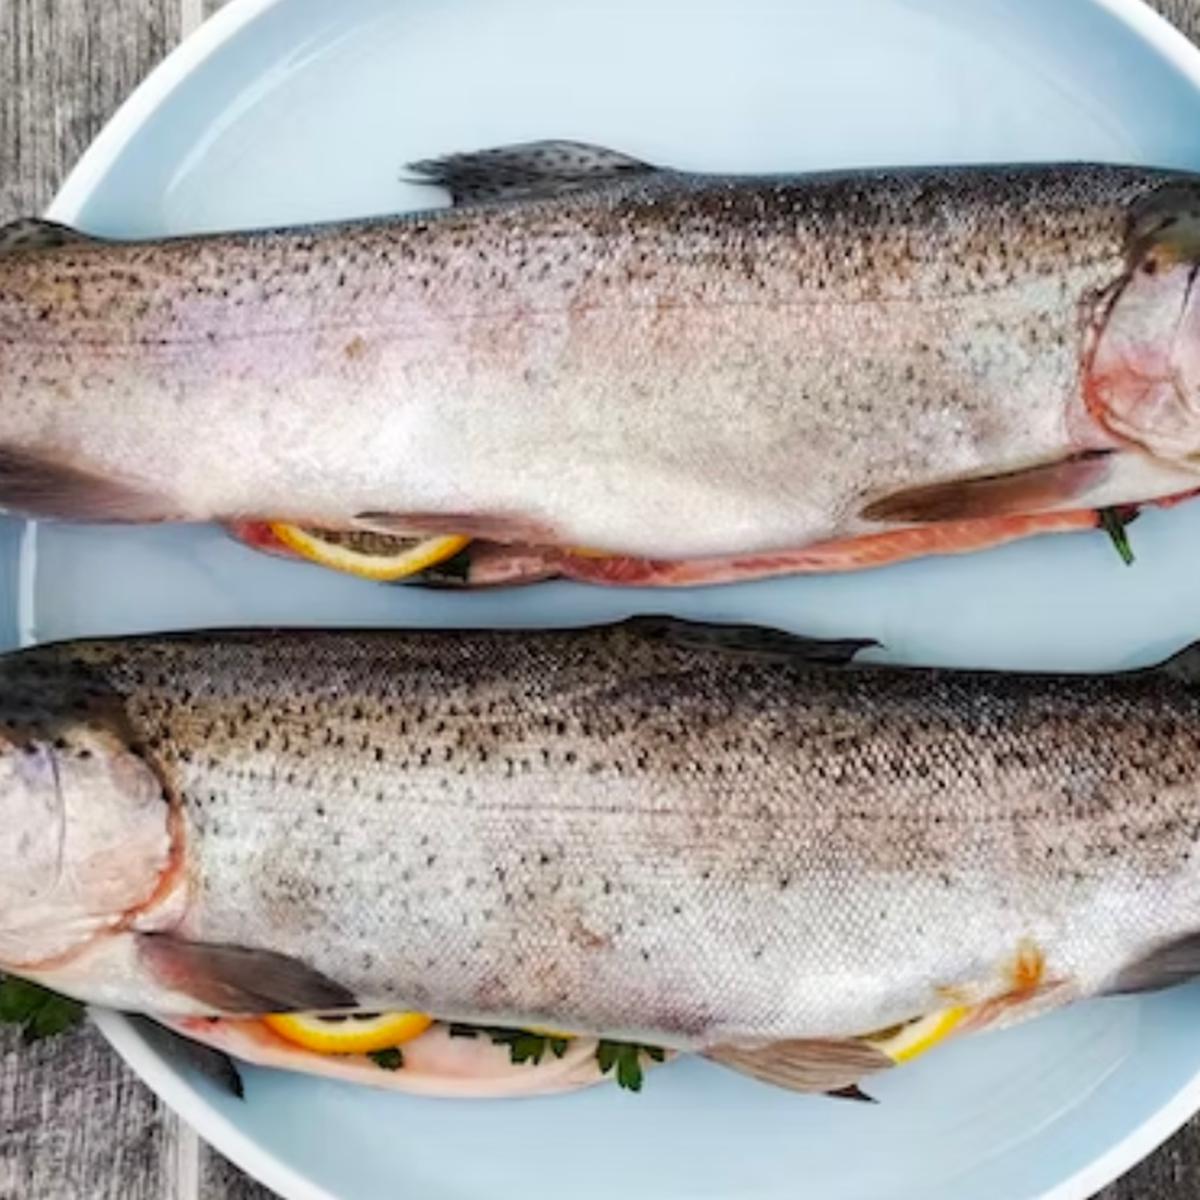 Descubra por qué comer piel de pescado puede ser bueno para la salud.